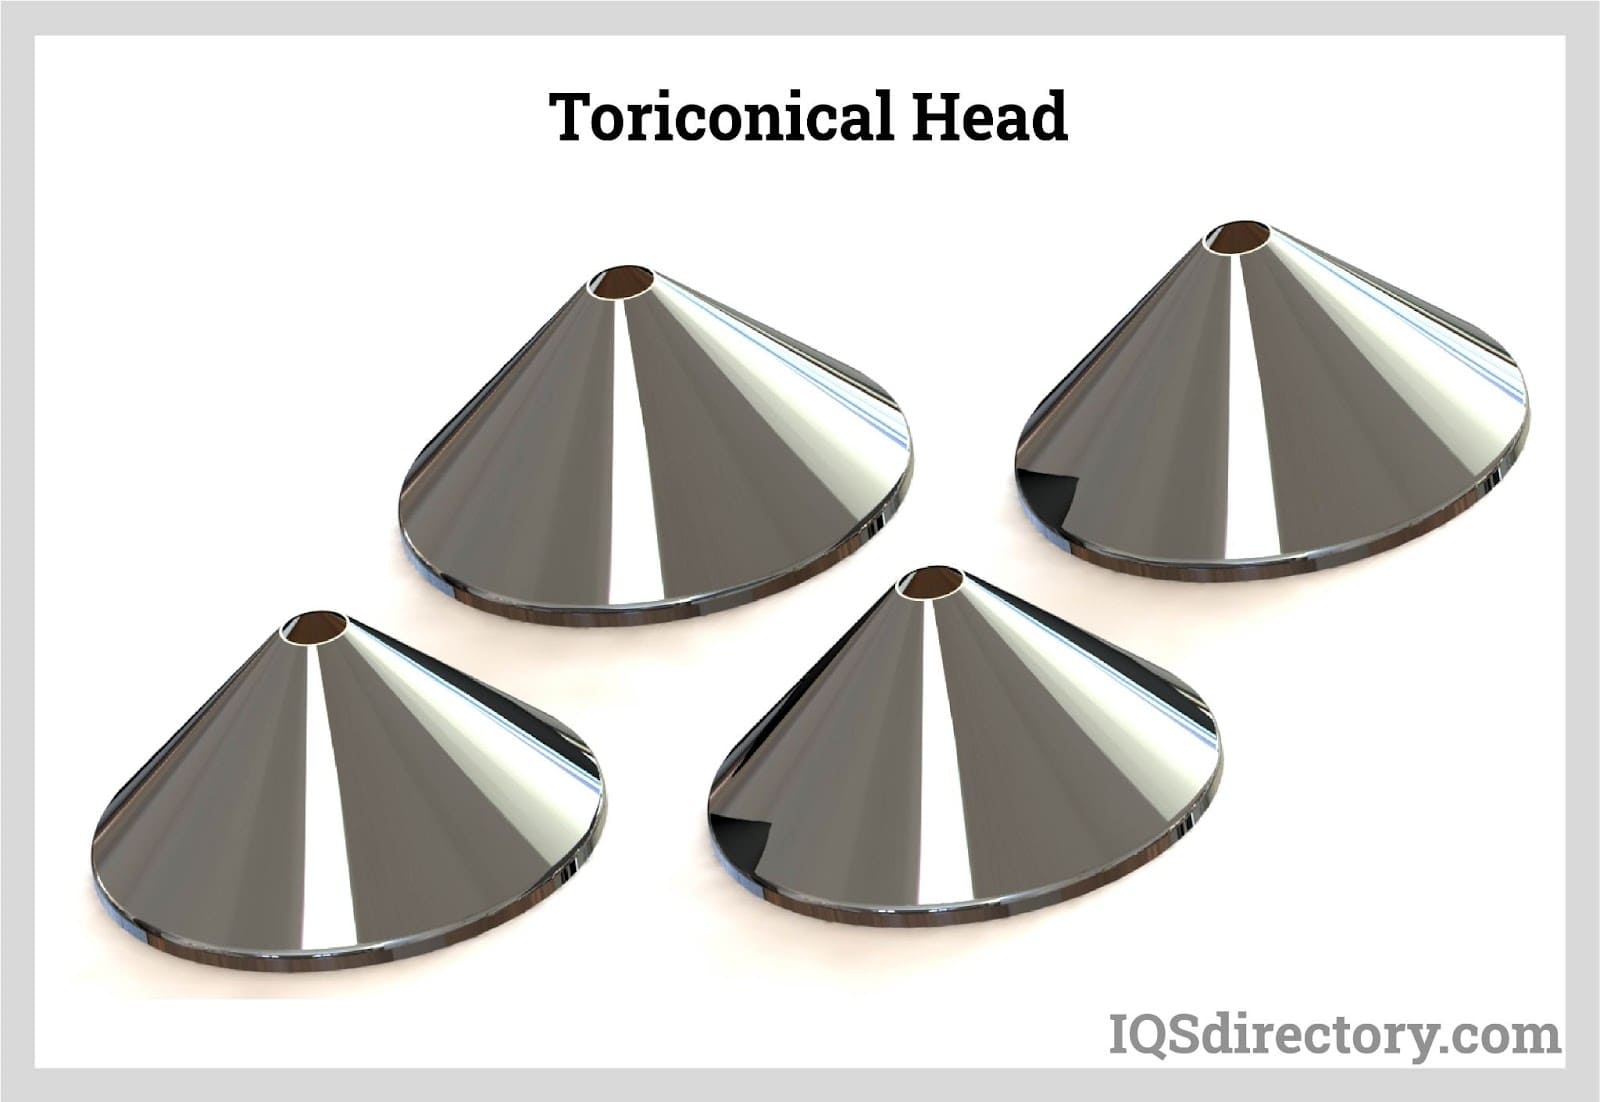 Toriconal Head